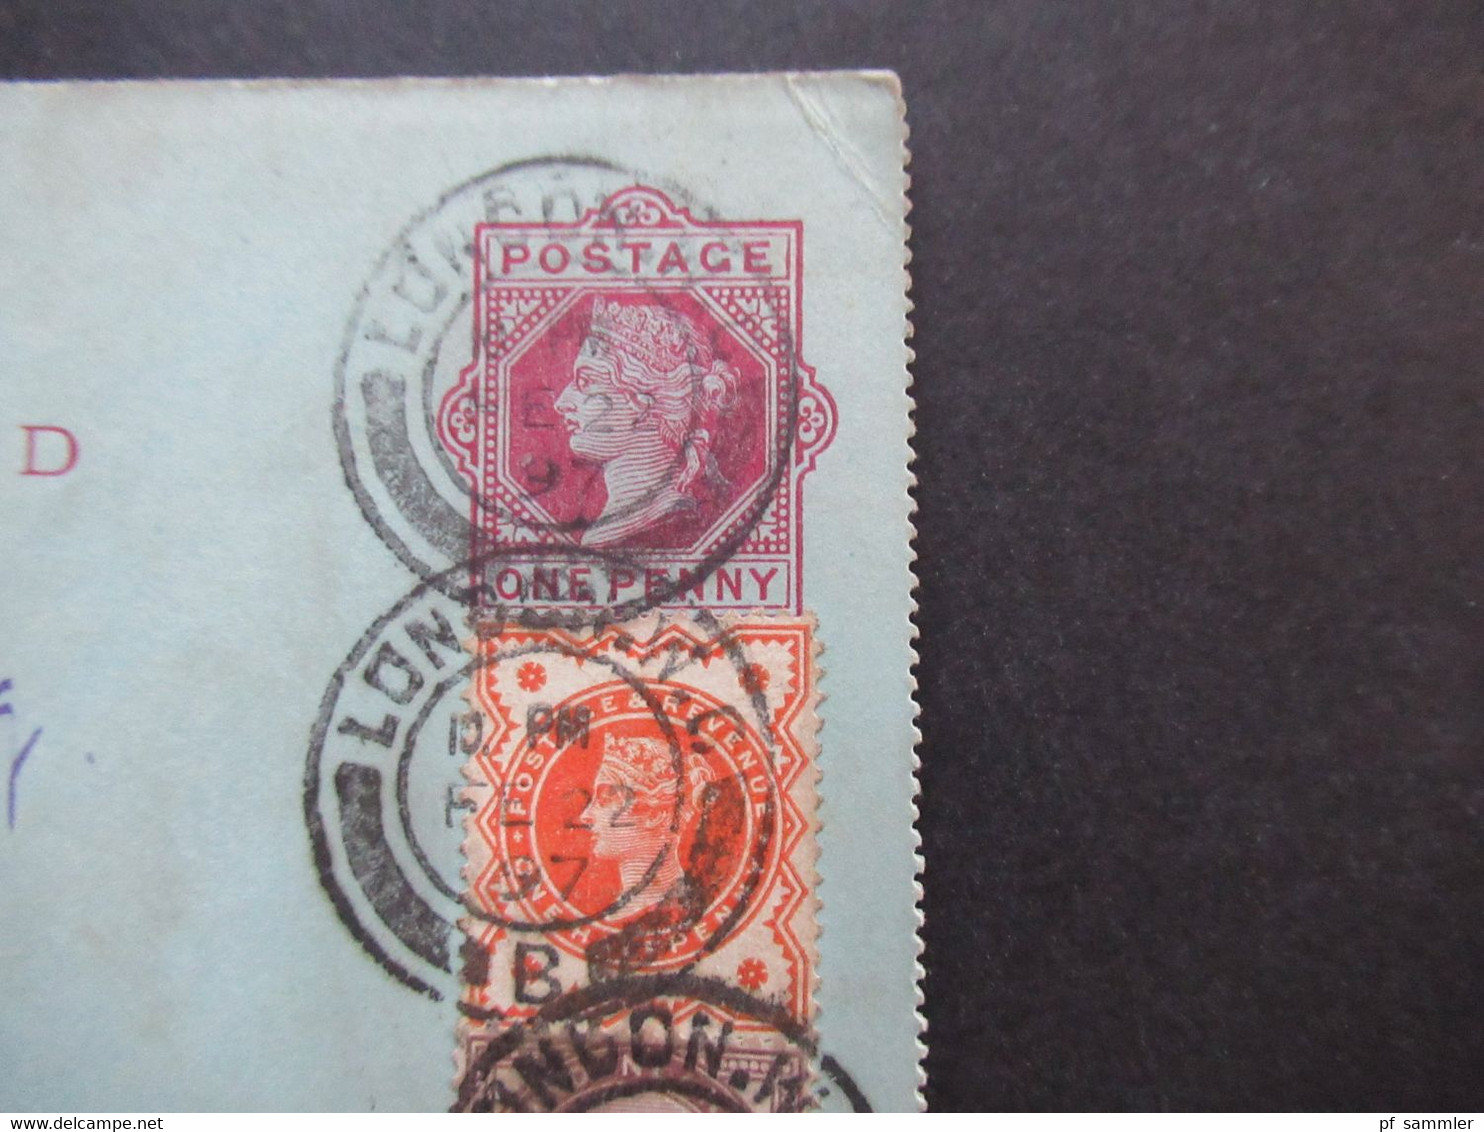 GB 1897 Letter Card / Kartenbrief Mit 2 ZusatzfrankaturenNr. 65 Und 86 Dreifarbenfrankatur Nach Cologne / Köln Gesendet - Cartas & Documentos